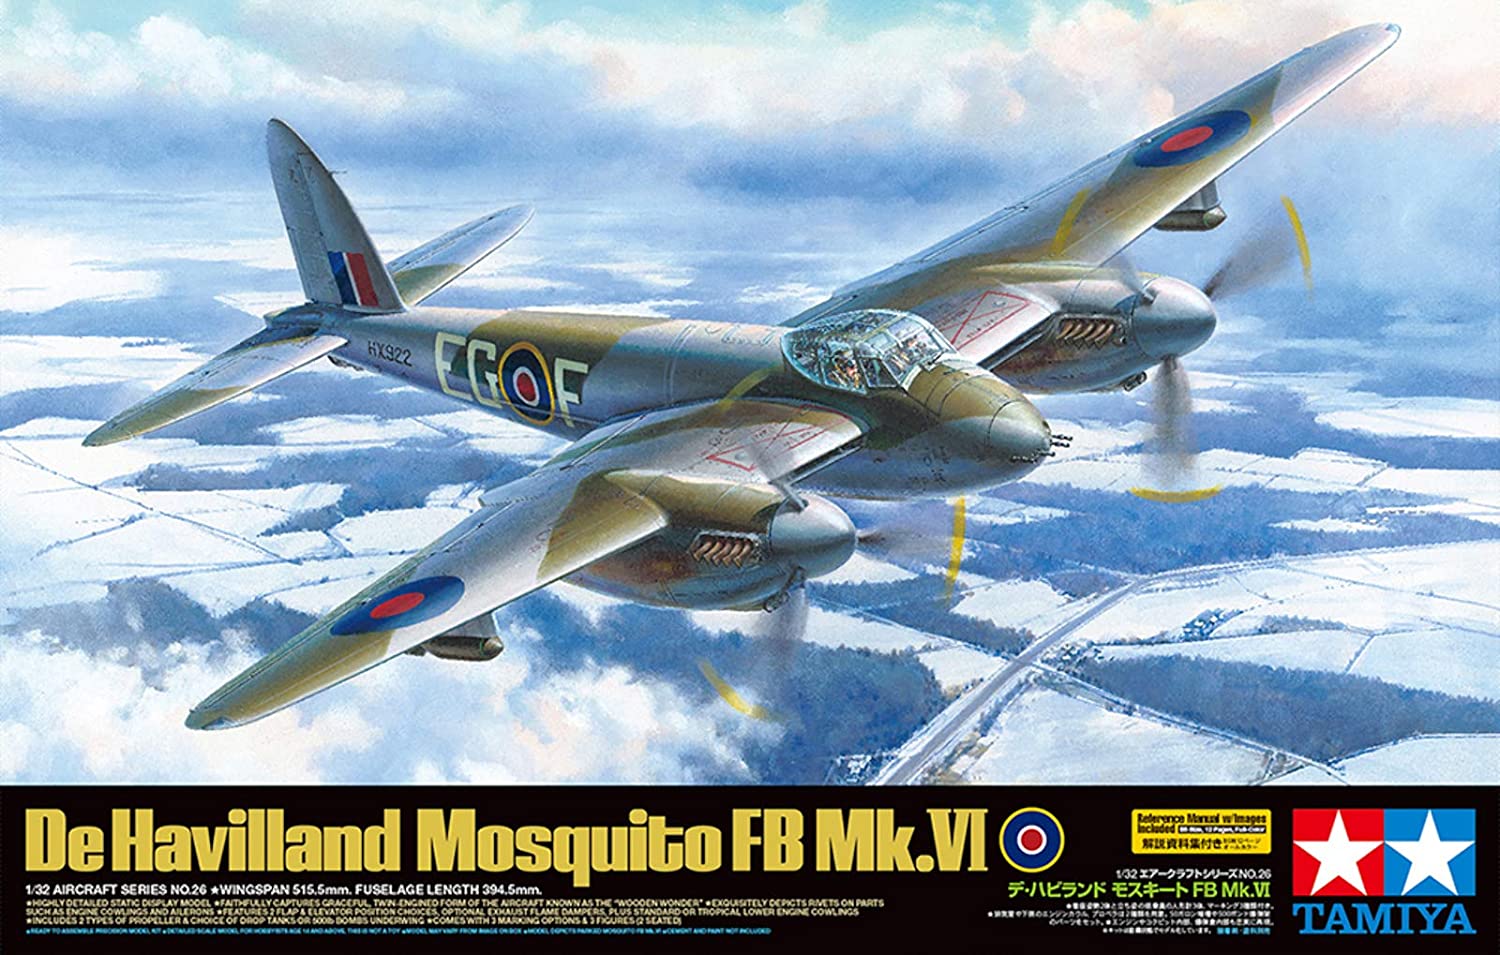 タミヤ 1/32 エアークラフトシリーズ No.26 イギリス空軍 デ・ハビランド モスキート FB Mk.VI プラモデル 60326